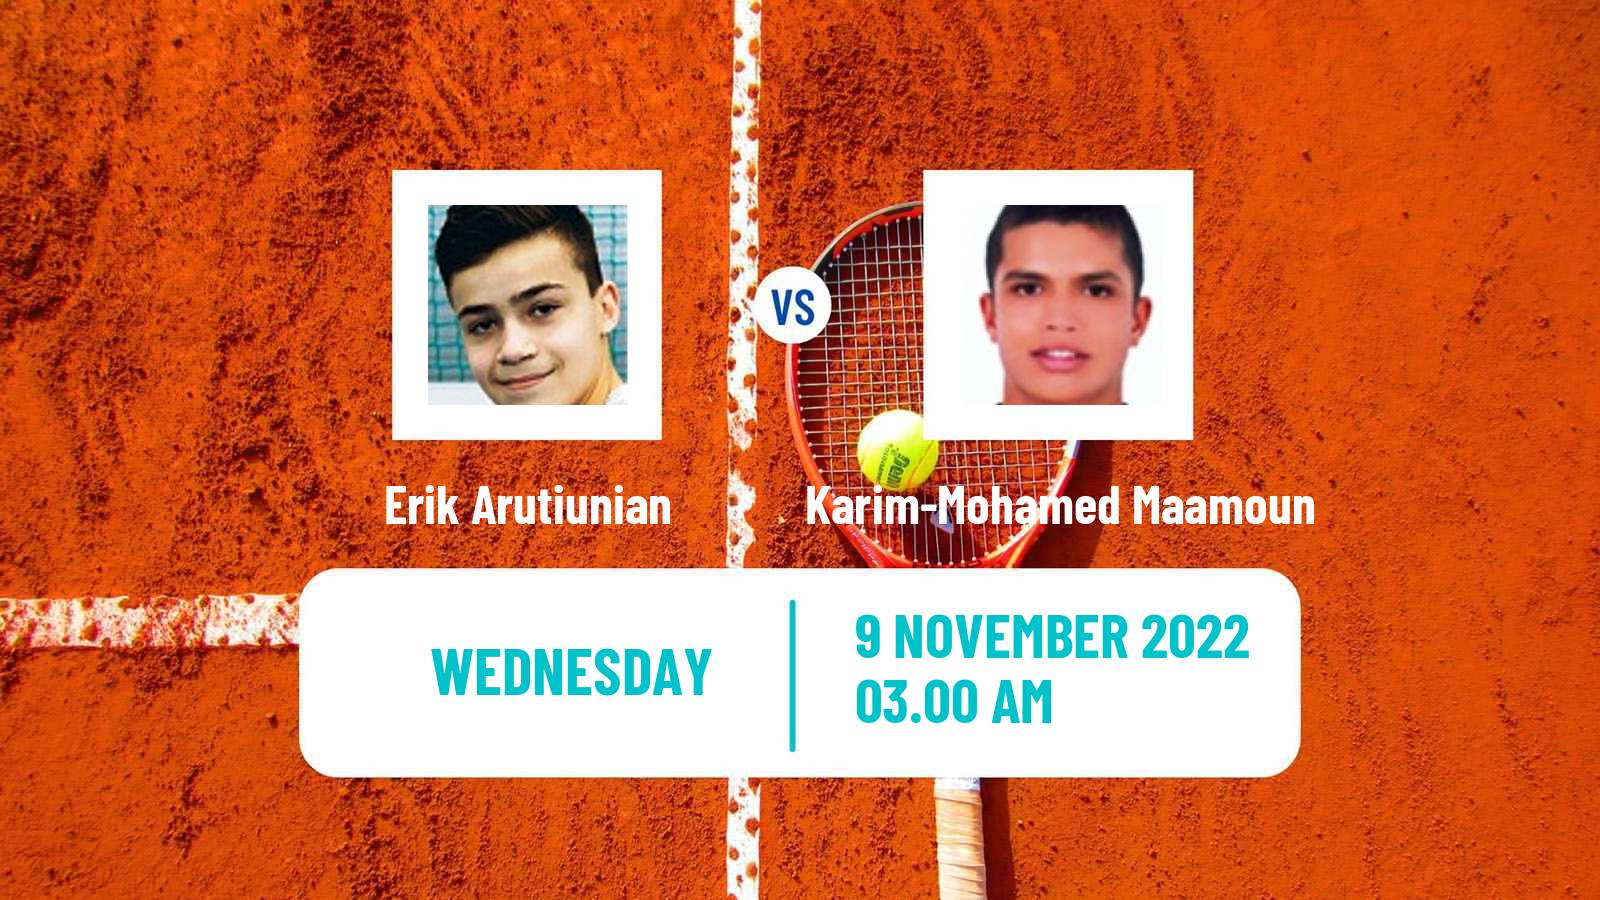 Tennis ITF Tournaments Erik Arutiunian - Karim-Mohamed Maamoun